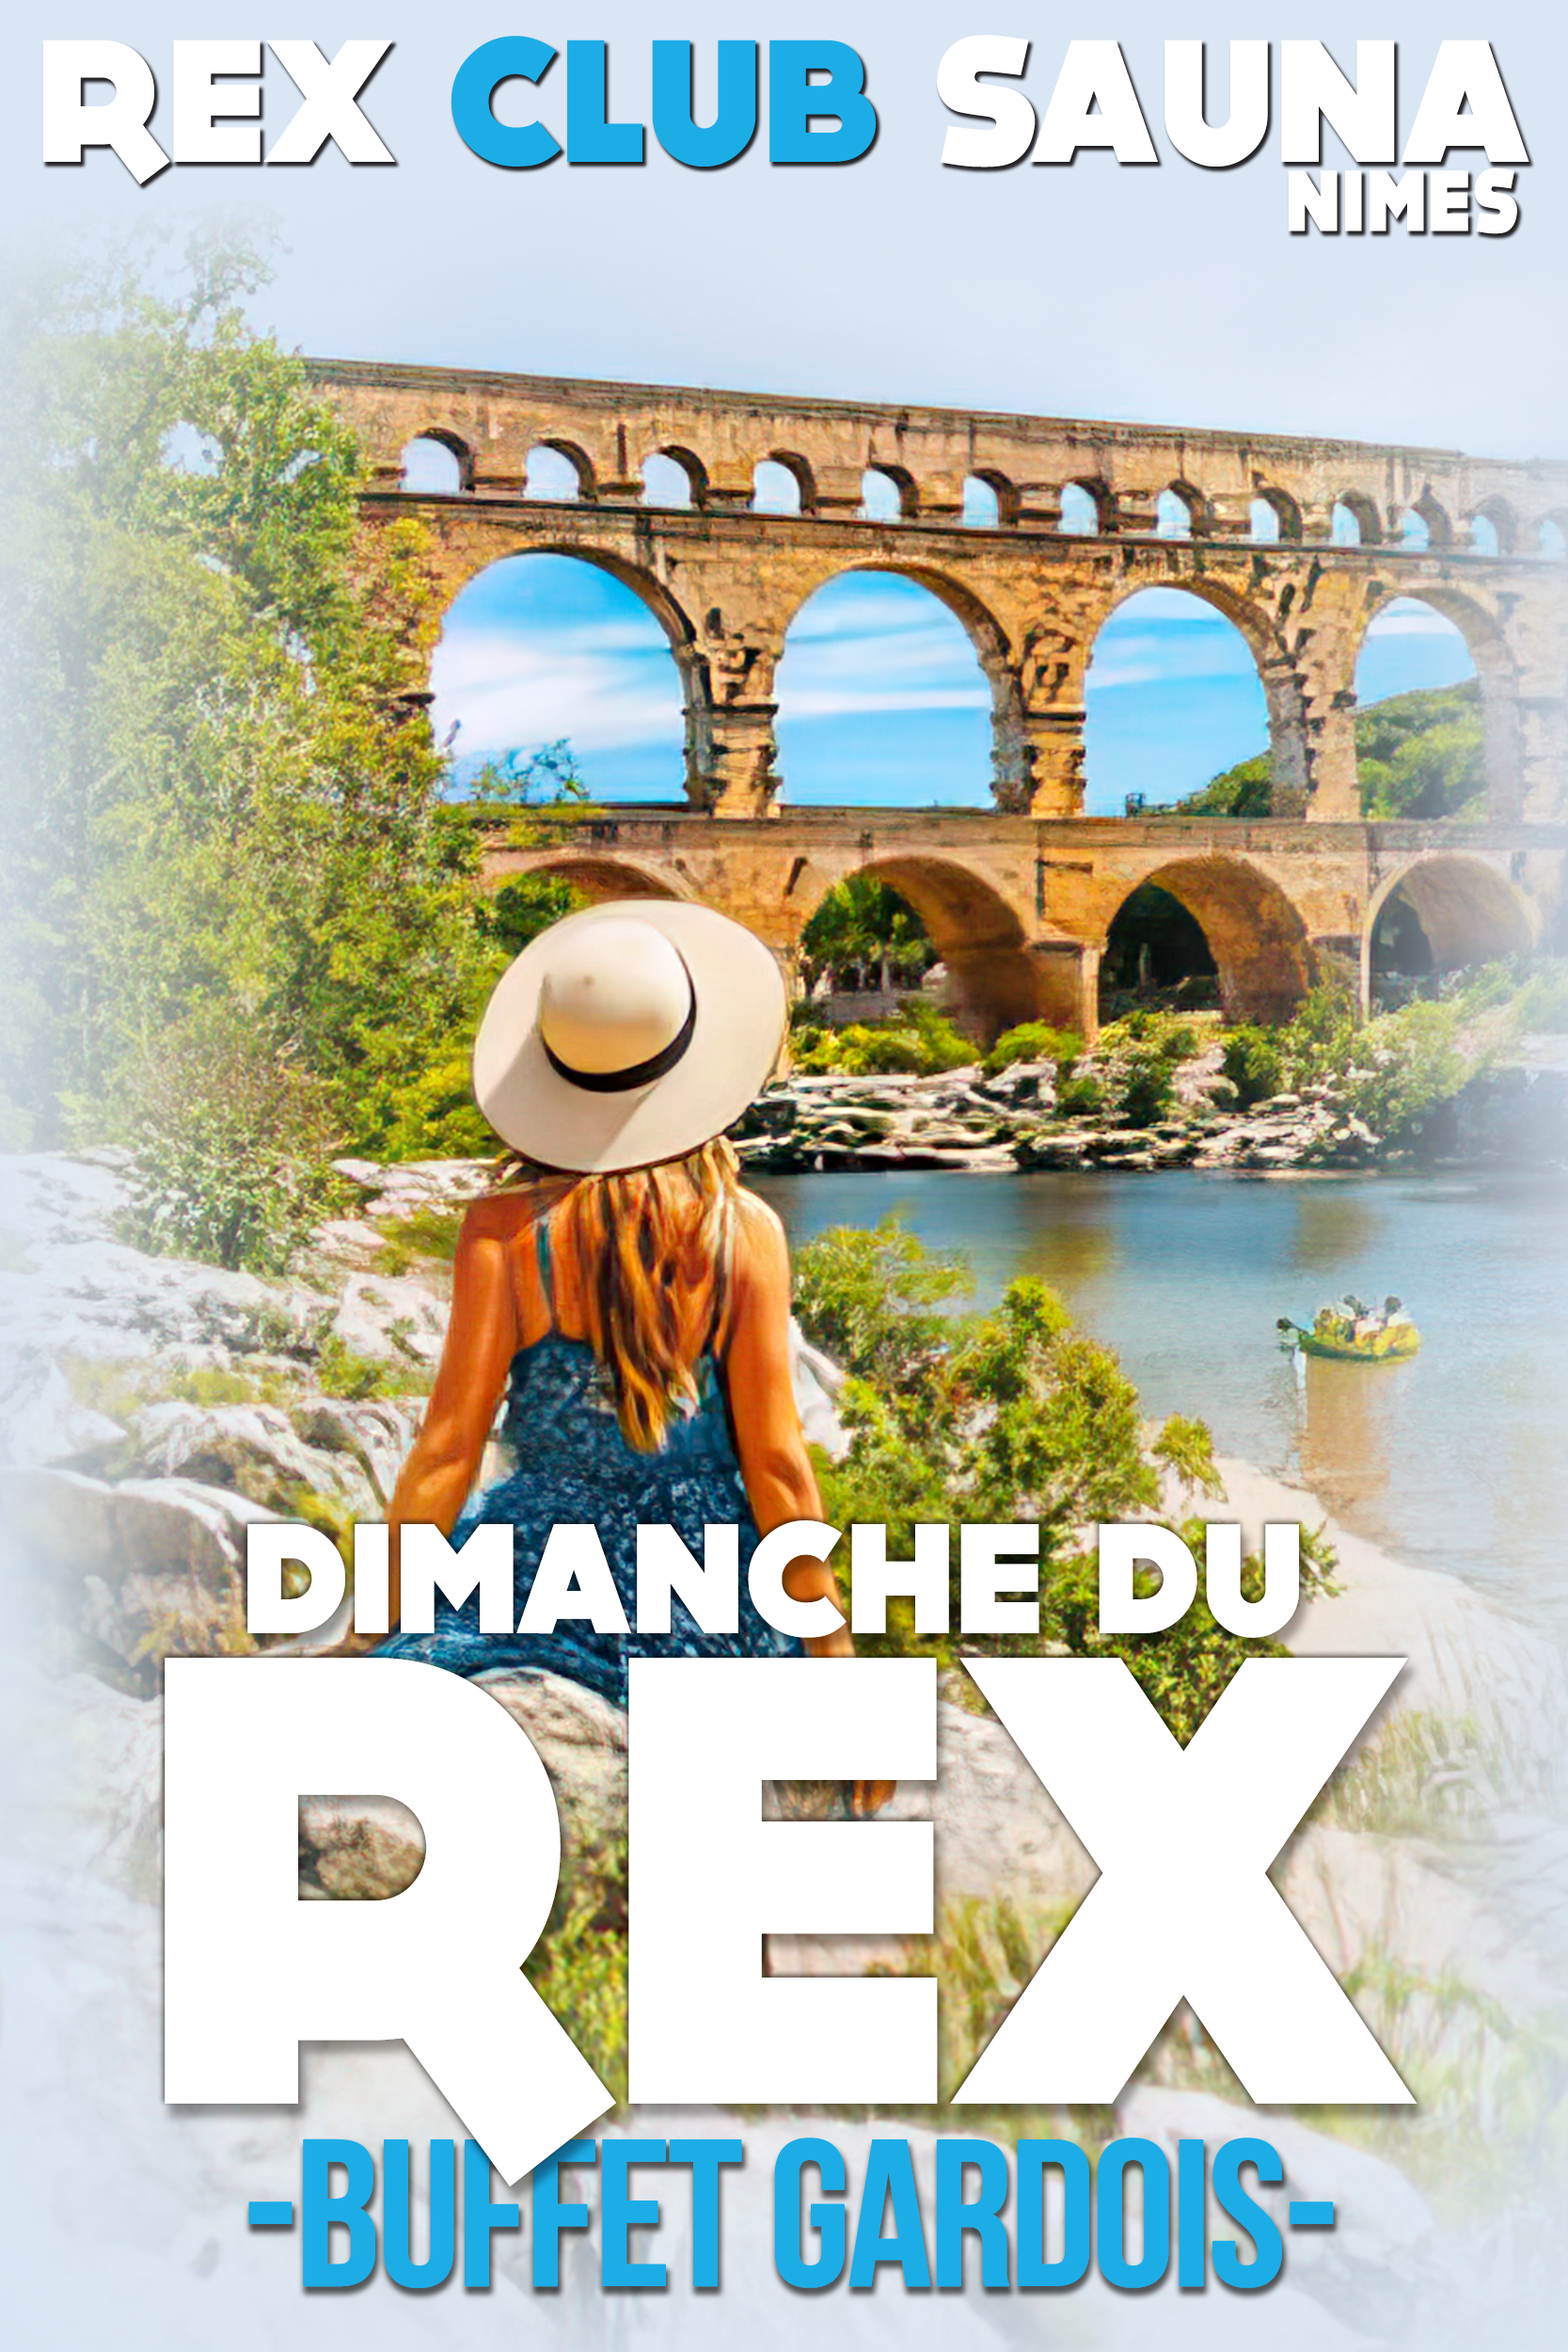 LES DIMANCHES DU REX - BUFFET GARDOIS @ Rex Club Sauna | Nîmes | Languedoc-Roussillon Midi-Pyrénées | France